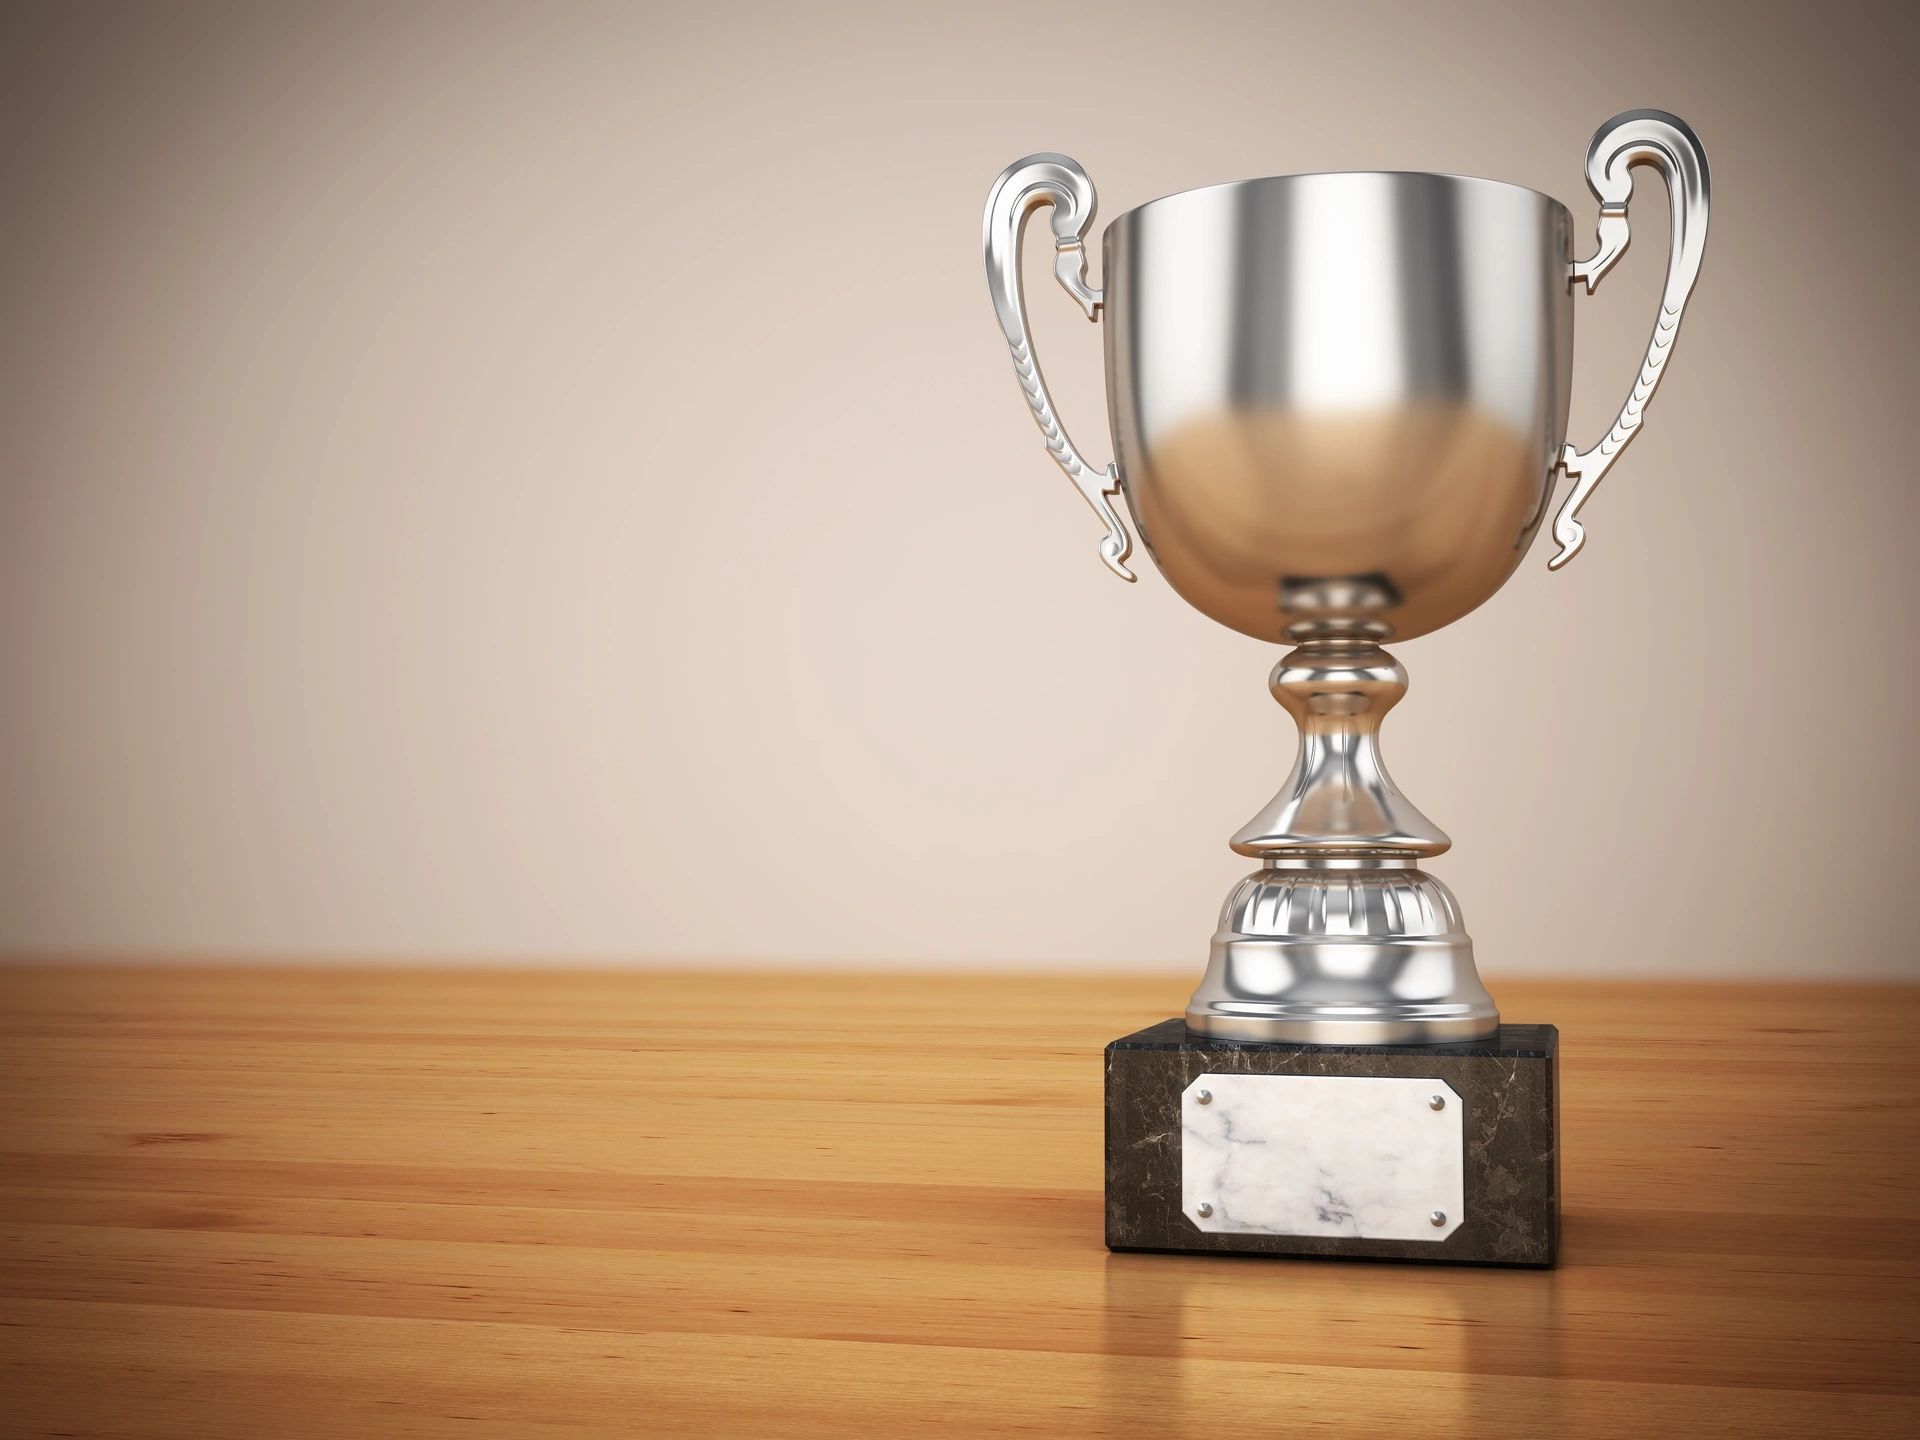 Silver trophy cup on woodgrain desk